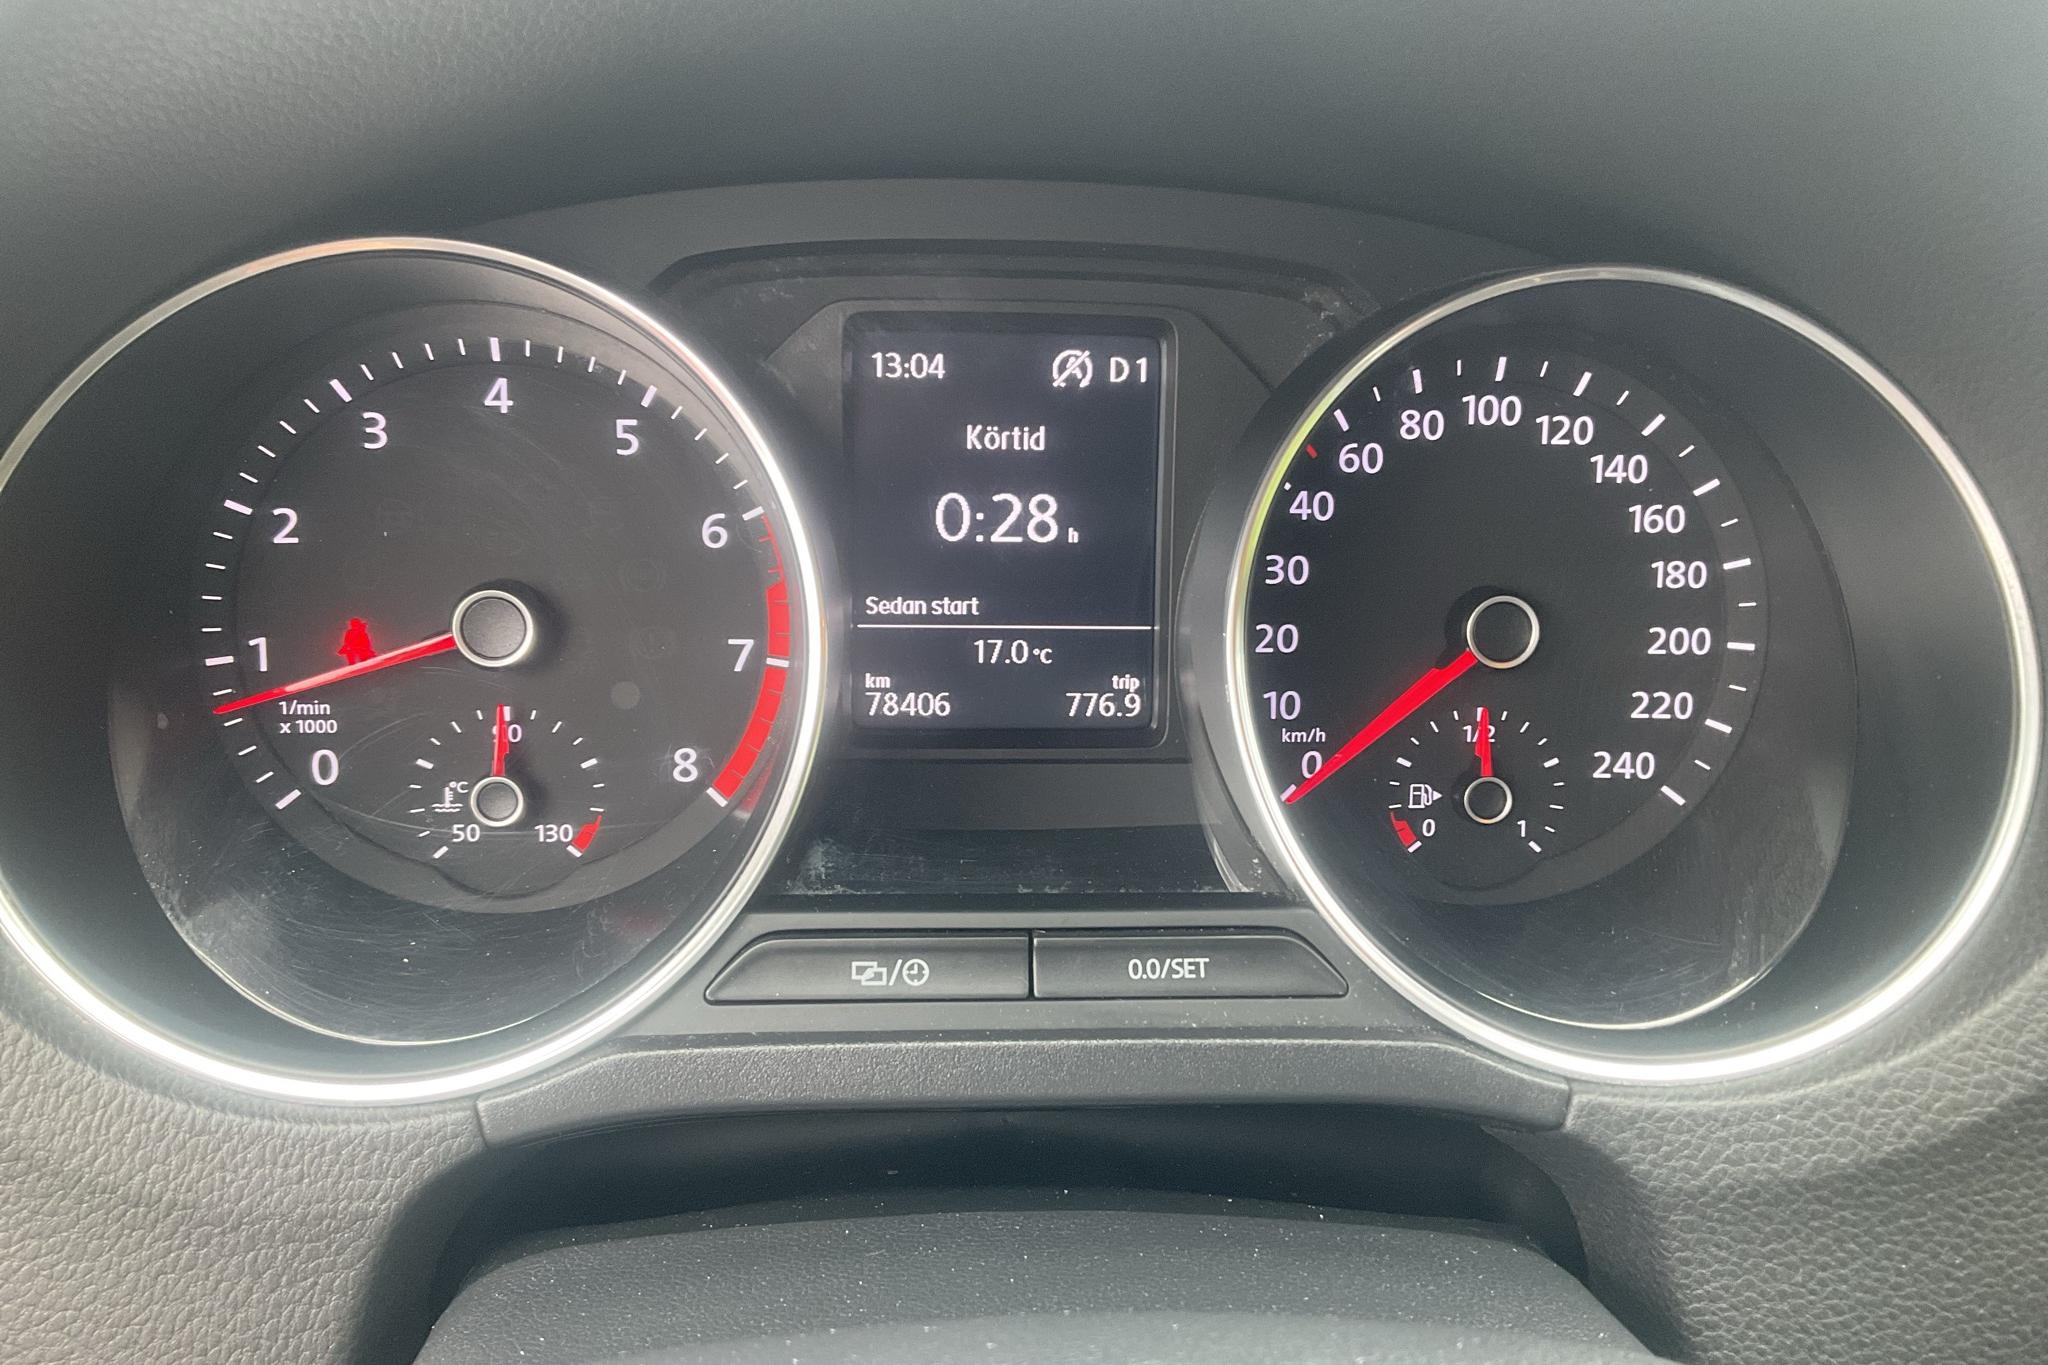 VW Polo 1.2 TSI 5dr (90hk) - 78 400 km - Automaatne - hõbe - 2017